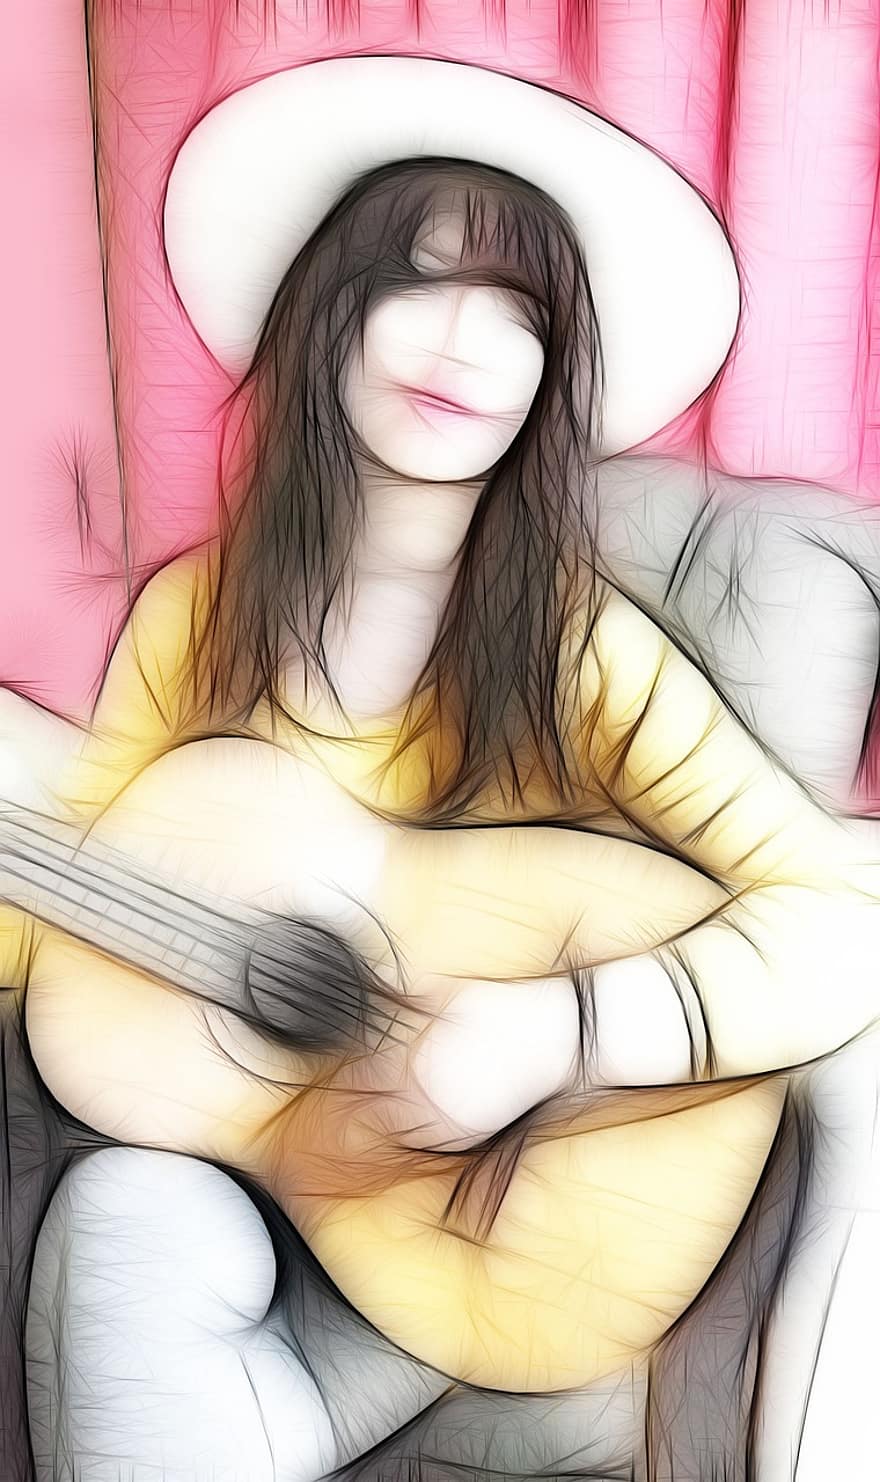 kytara, dívka, hudba, nástroj, hraní na kytaru, hudební nástroj, žena, hudebník, čepice